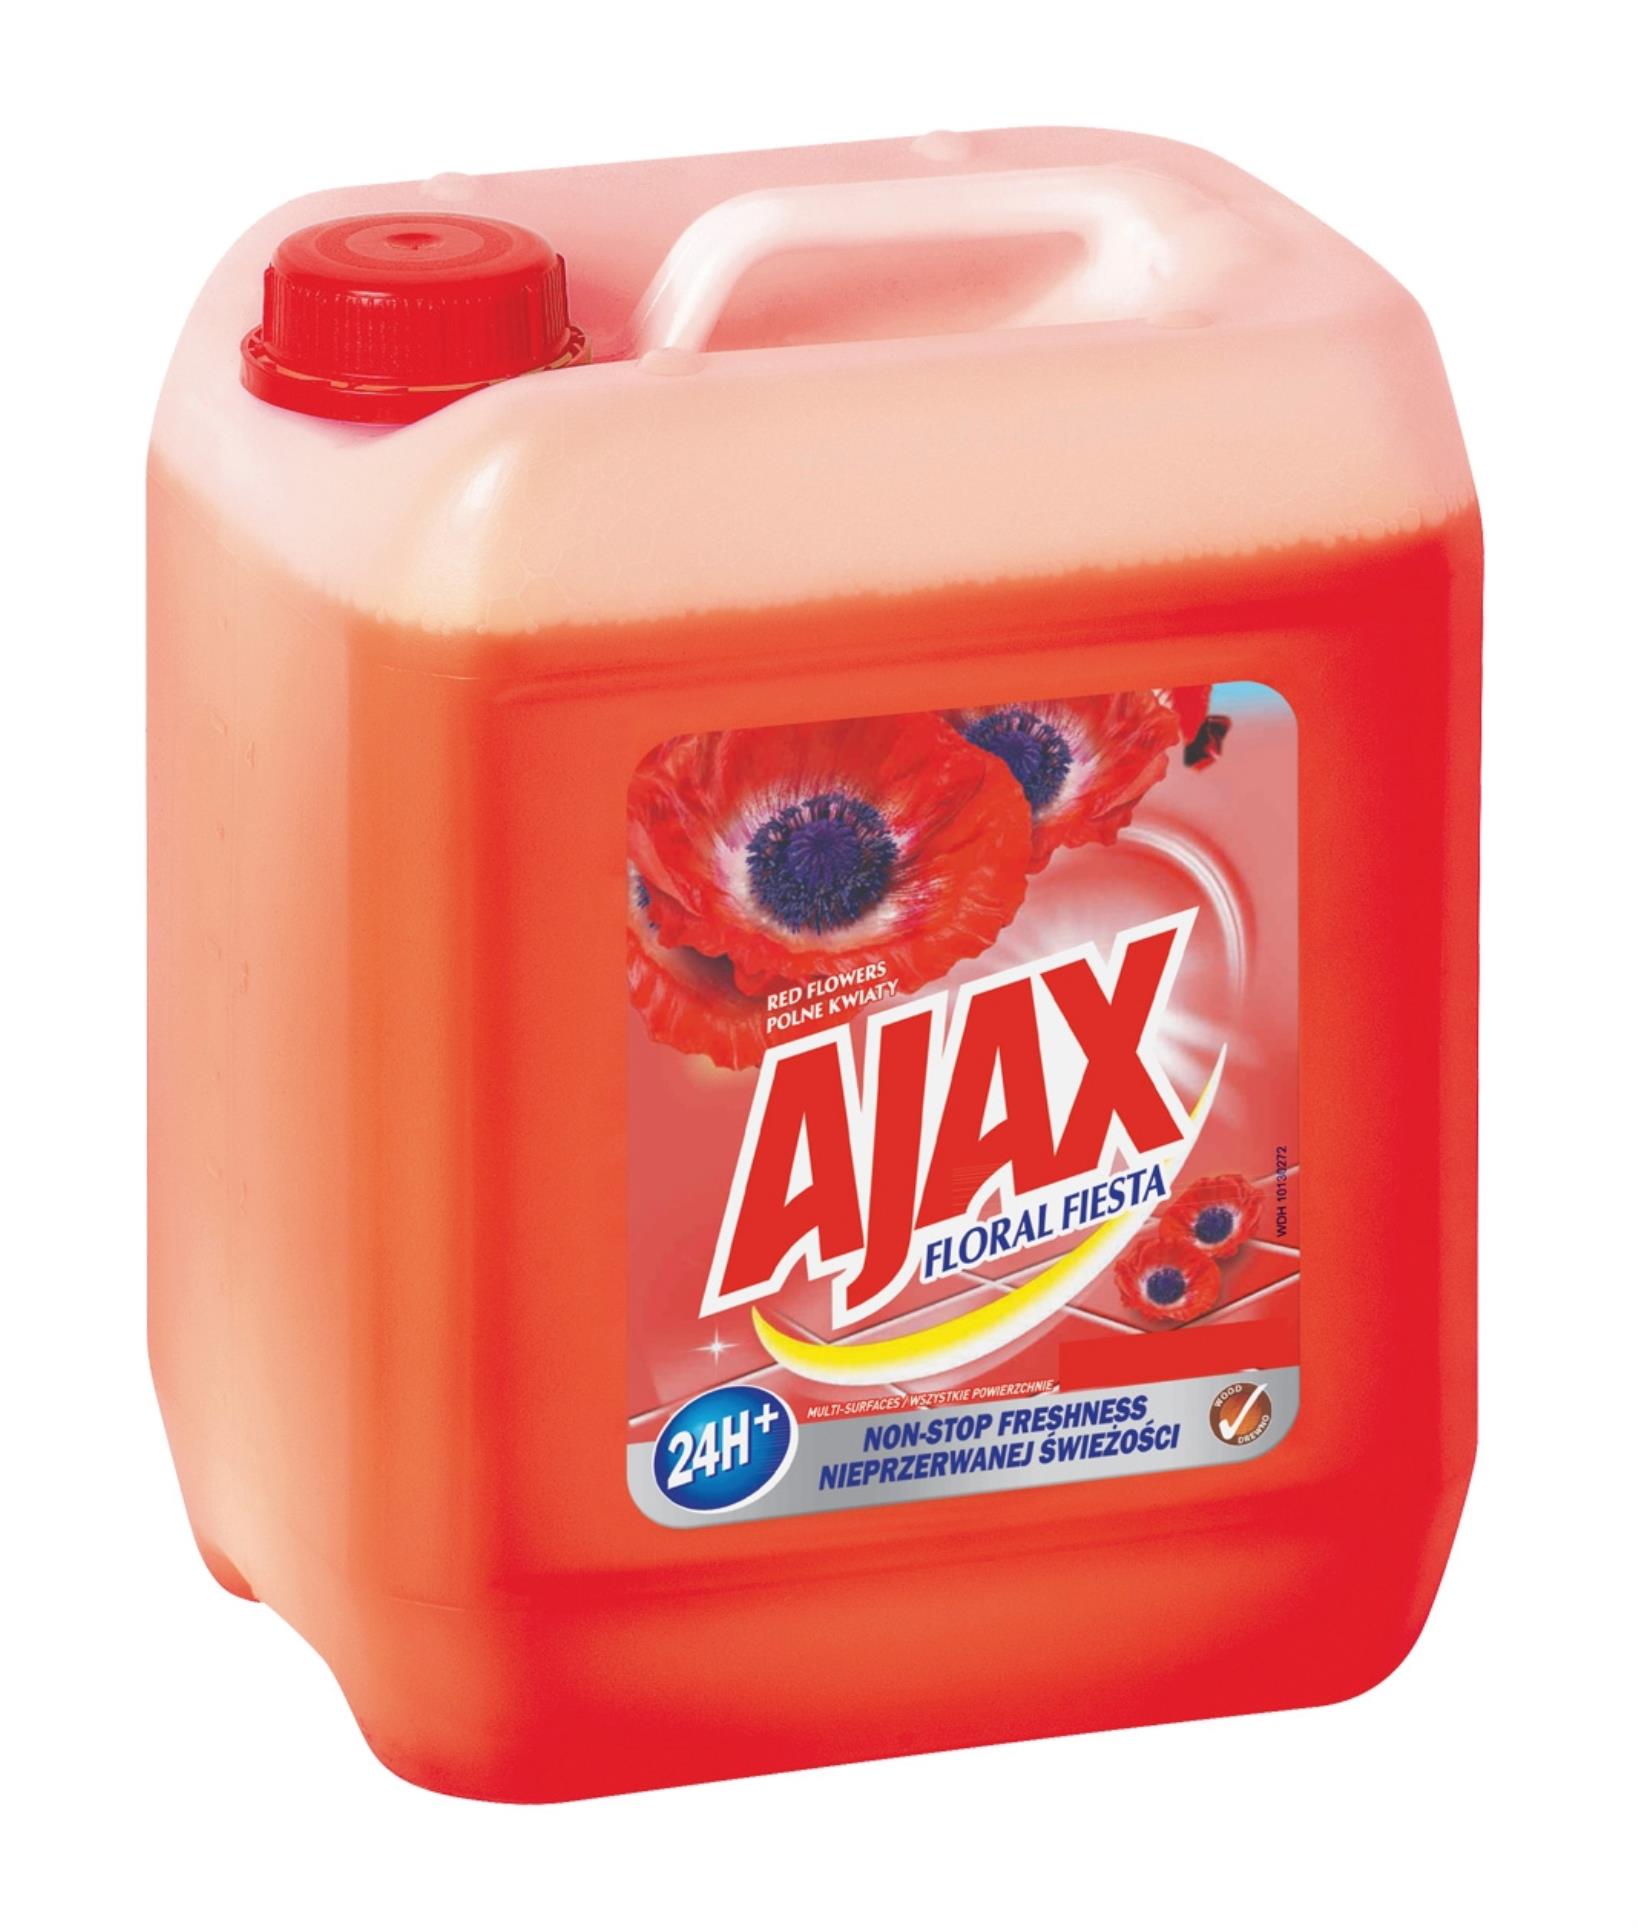 Ajax Čisticí prostředek na podlahy Ajax - červený, 5 l